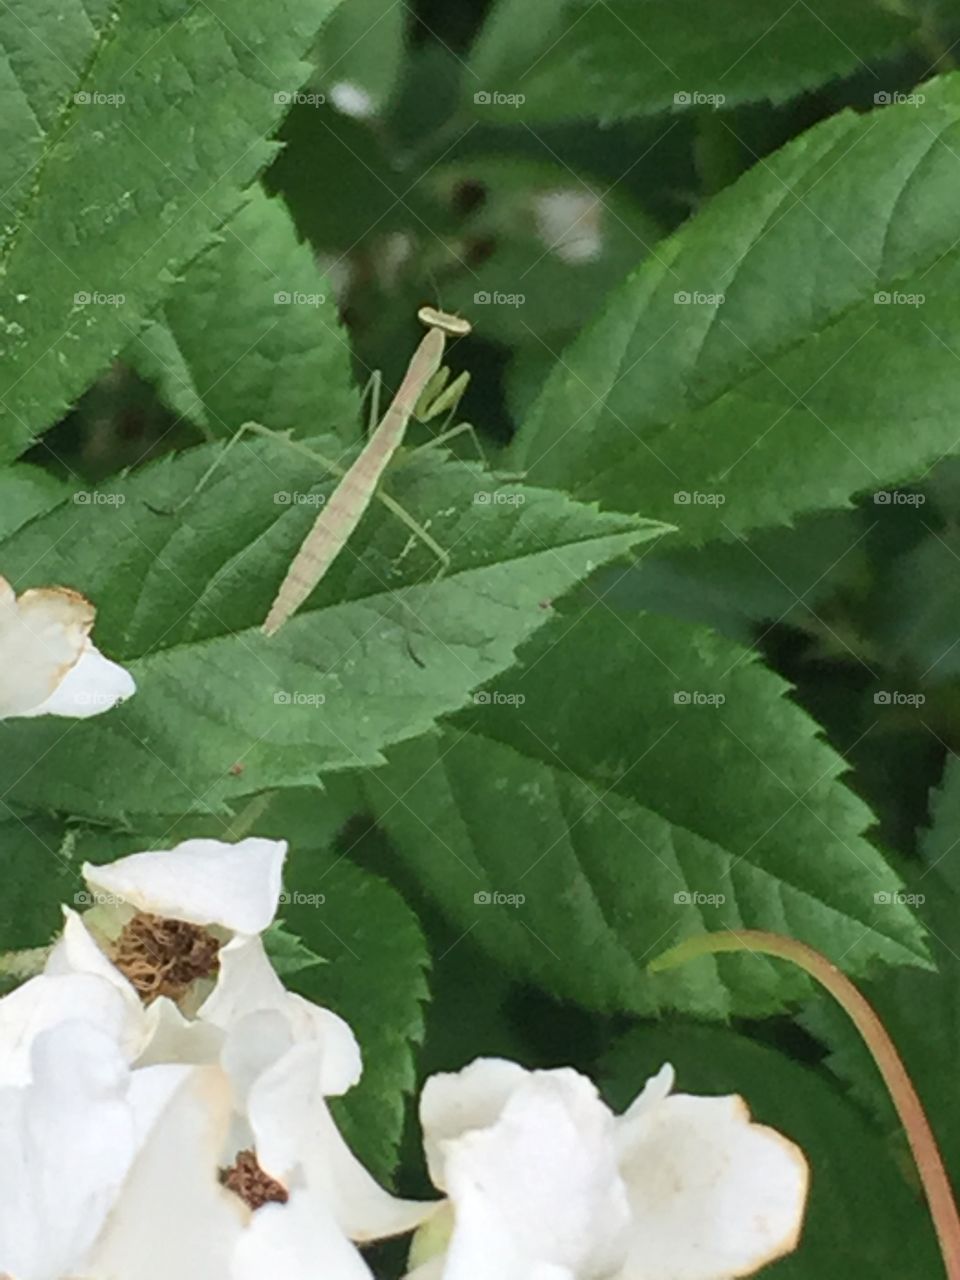 Praying mantis my kids named "John"... Yes it's a female 😏